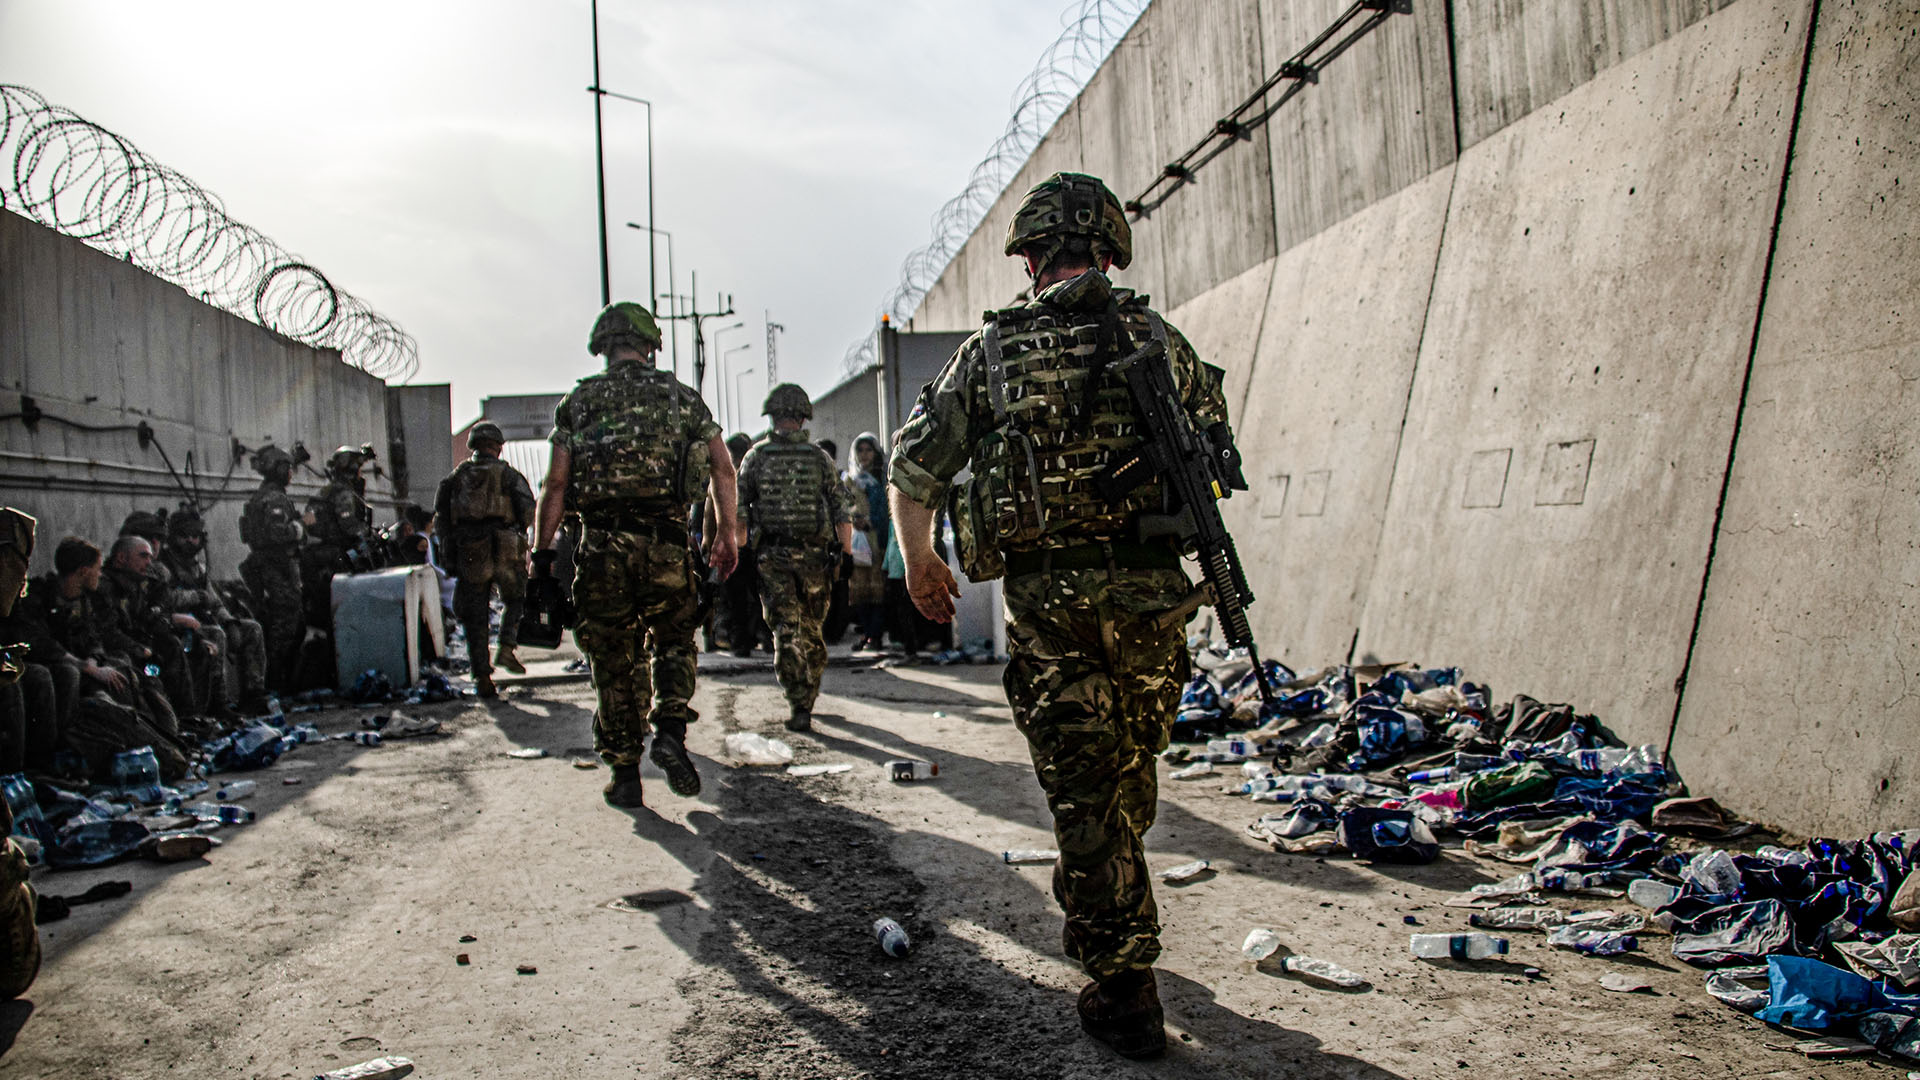 Archivbild: Britische Soldaten, die sich an der Evakuierung von Ortskräften in Kabul beteiligen. (August 2021) | picture alliance/dpa/PA Media